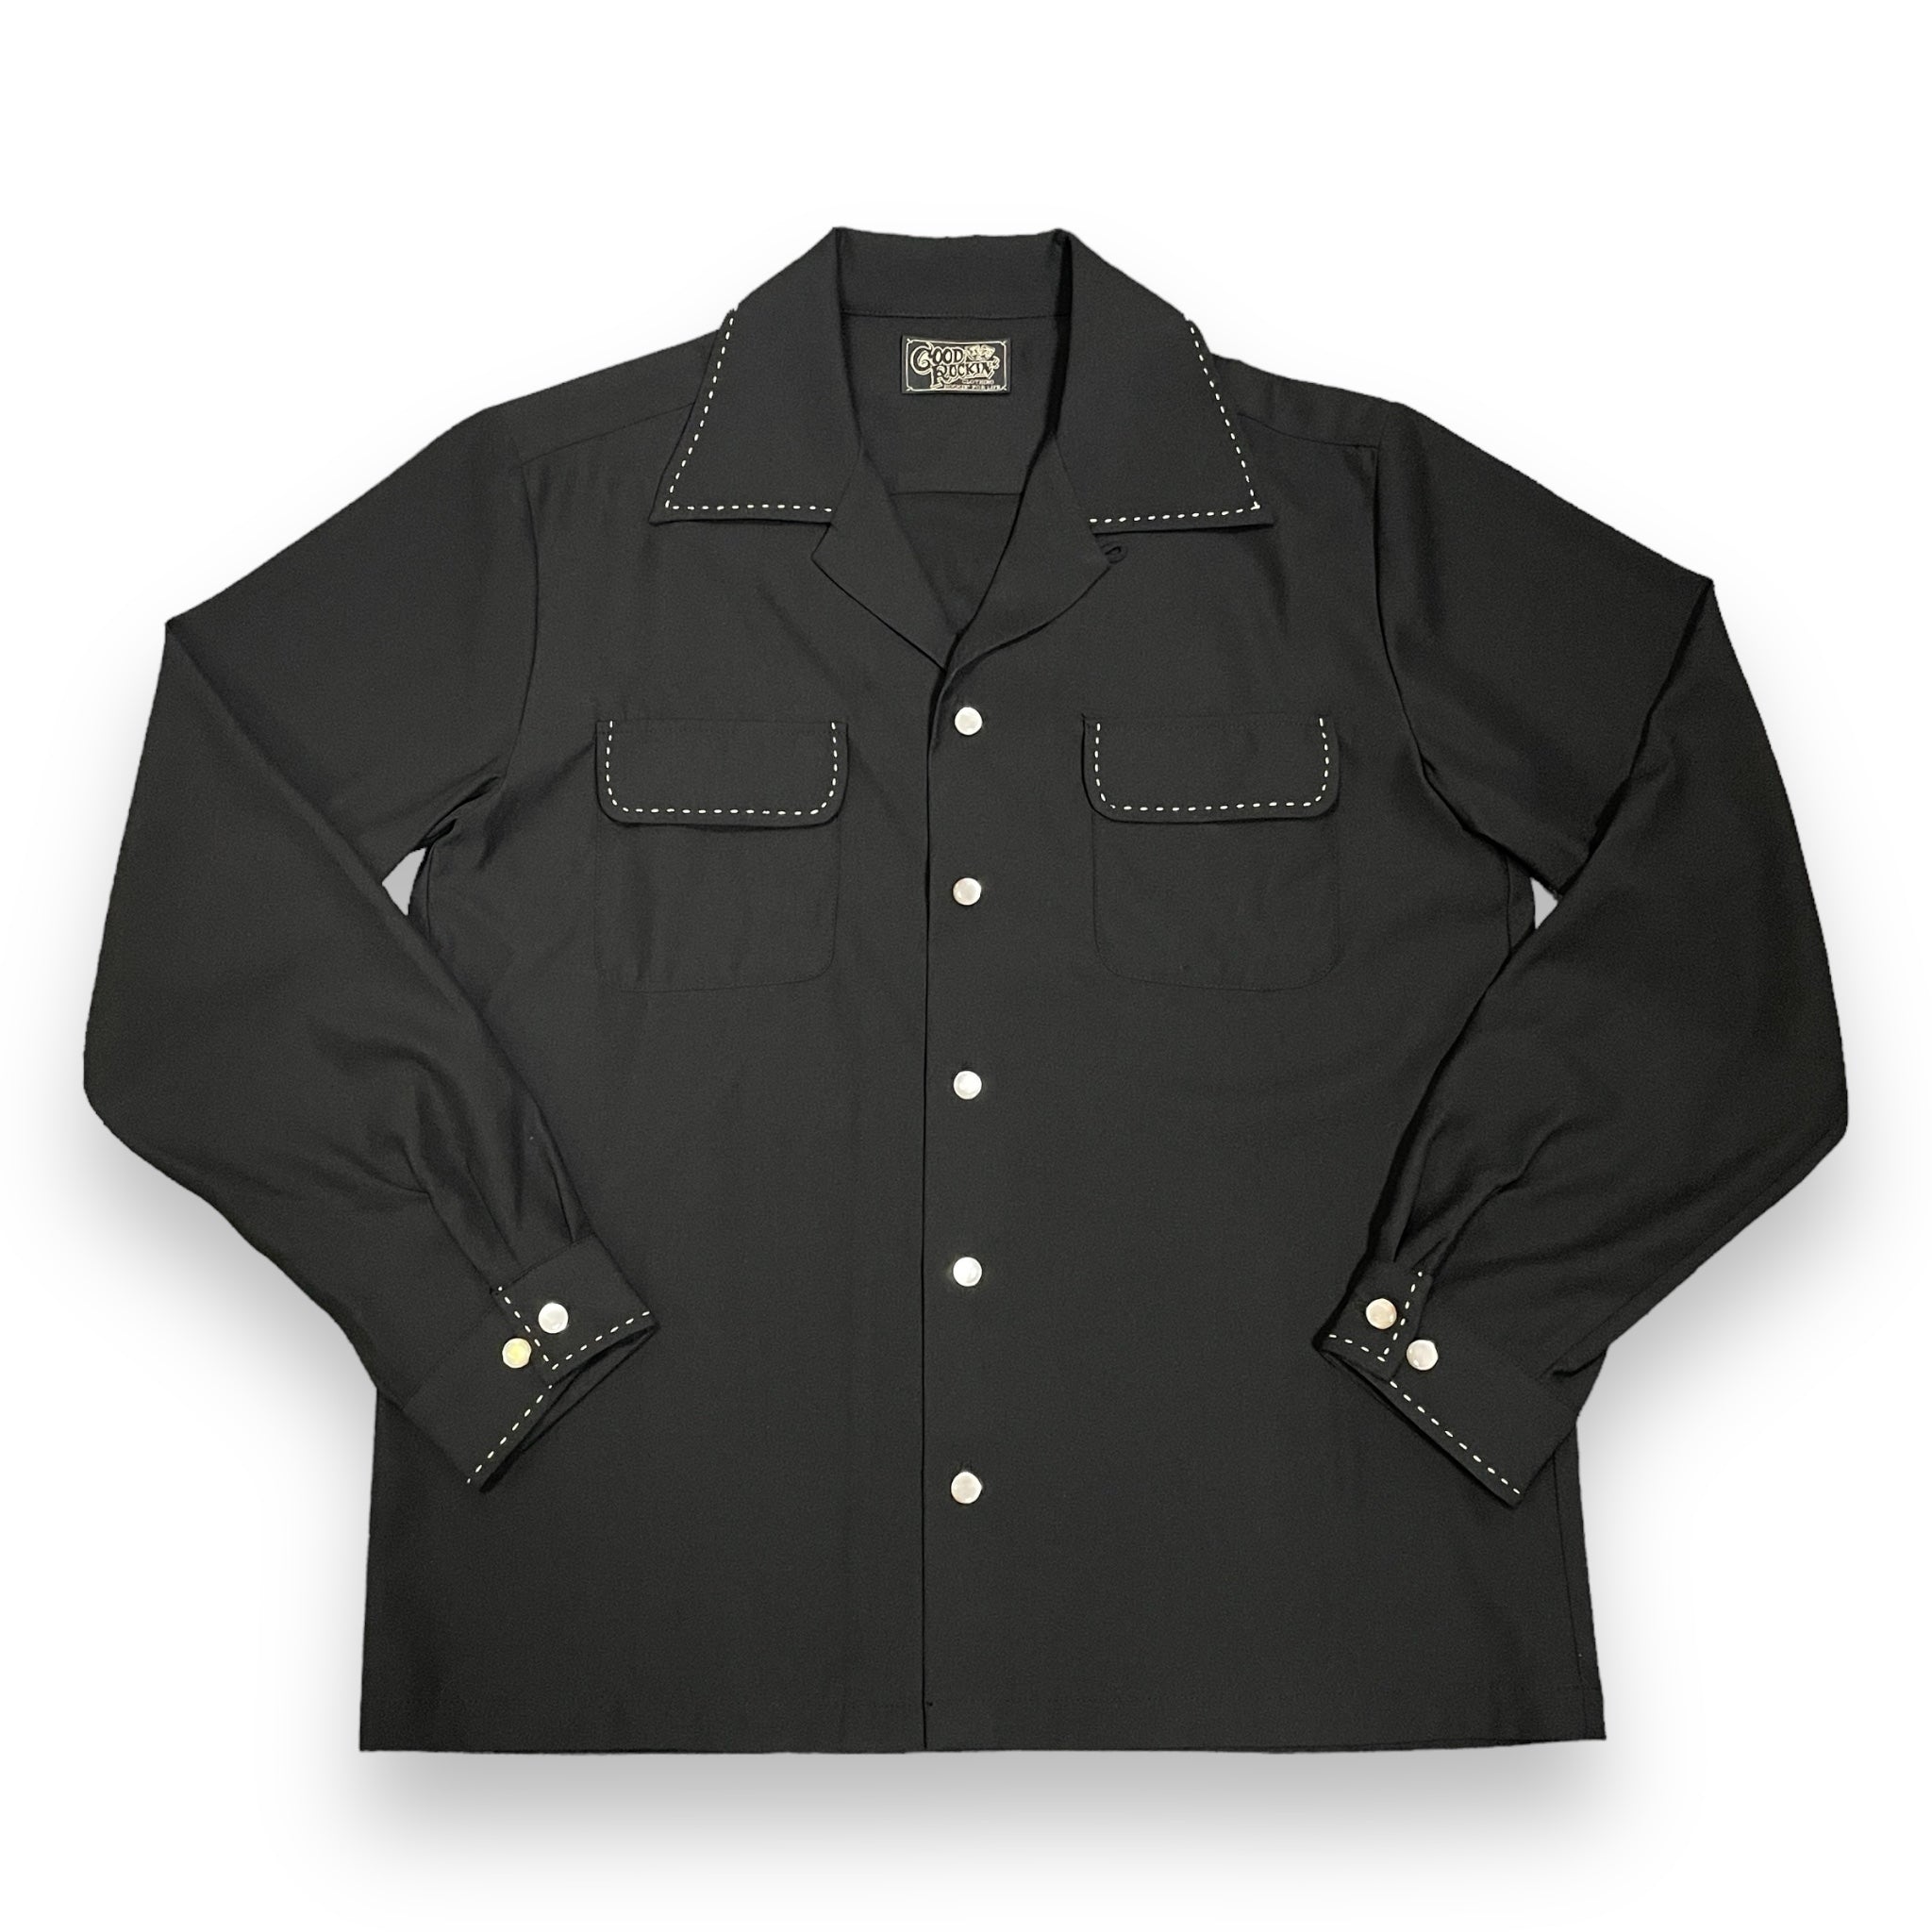 ご予約受付中Long Sleeve Shirt「Stitch」/長袖オープンカラーシャツ「ハンドステッチ・ブラック」 – GOOD ROCKIN'